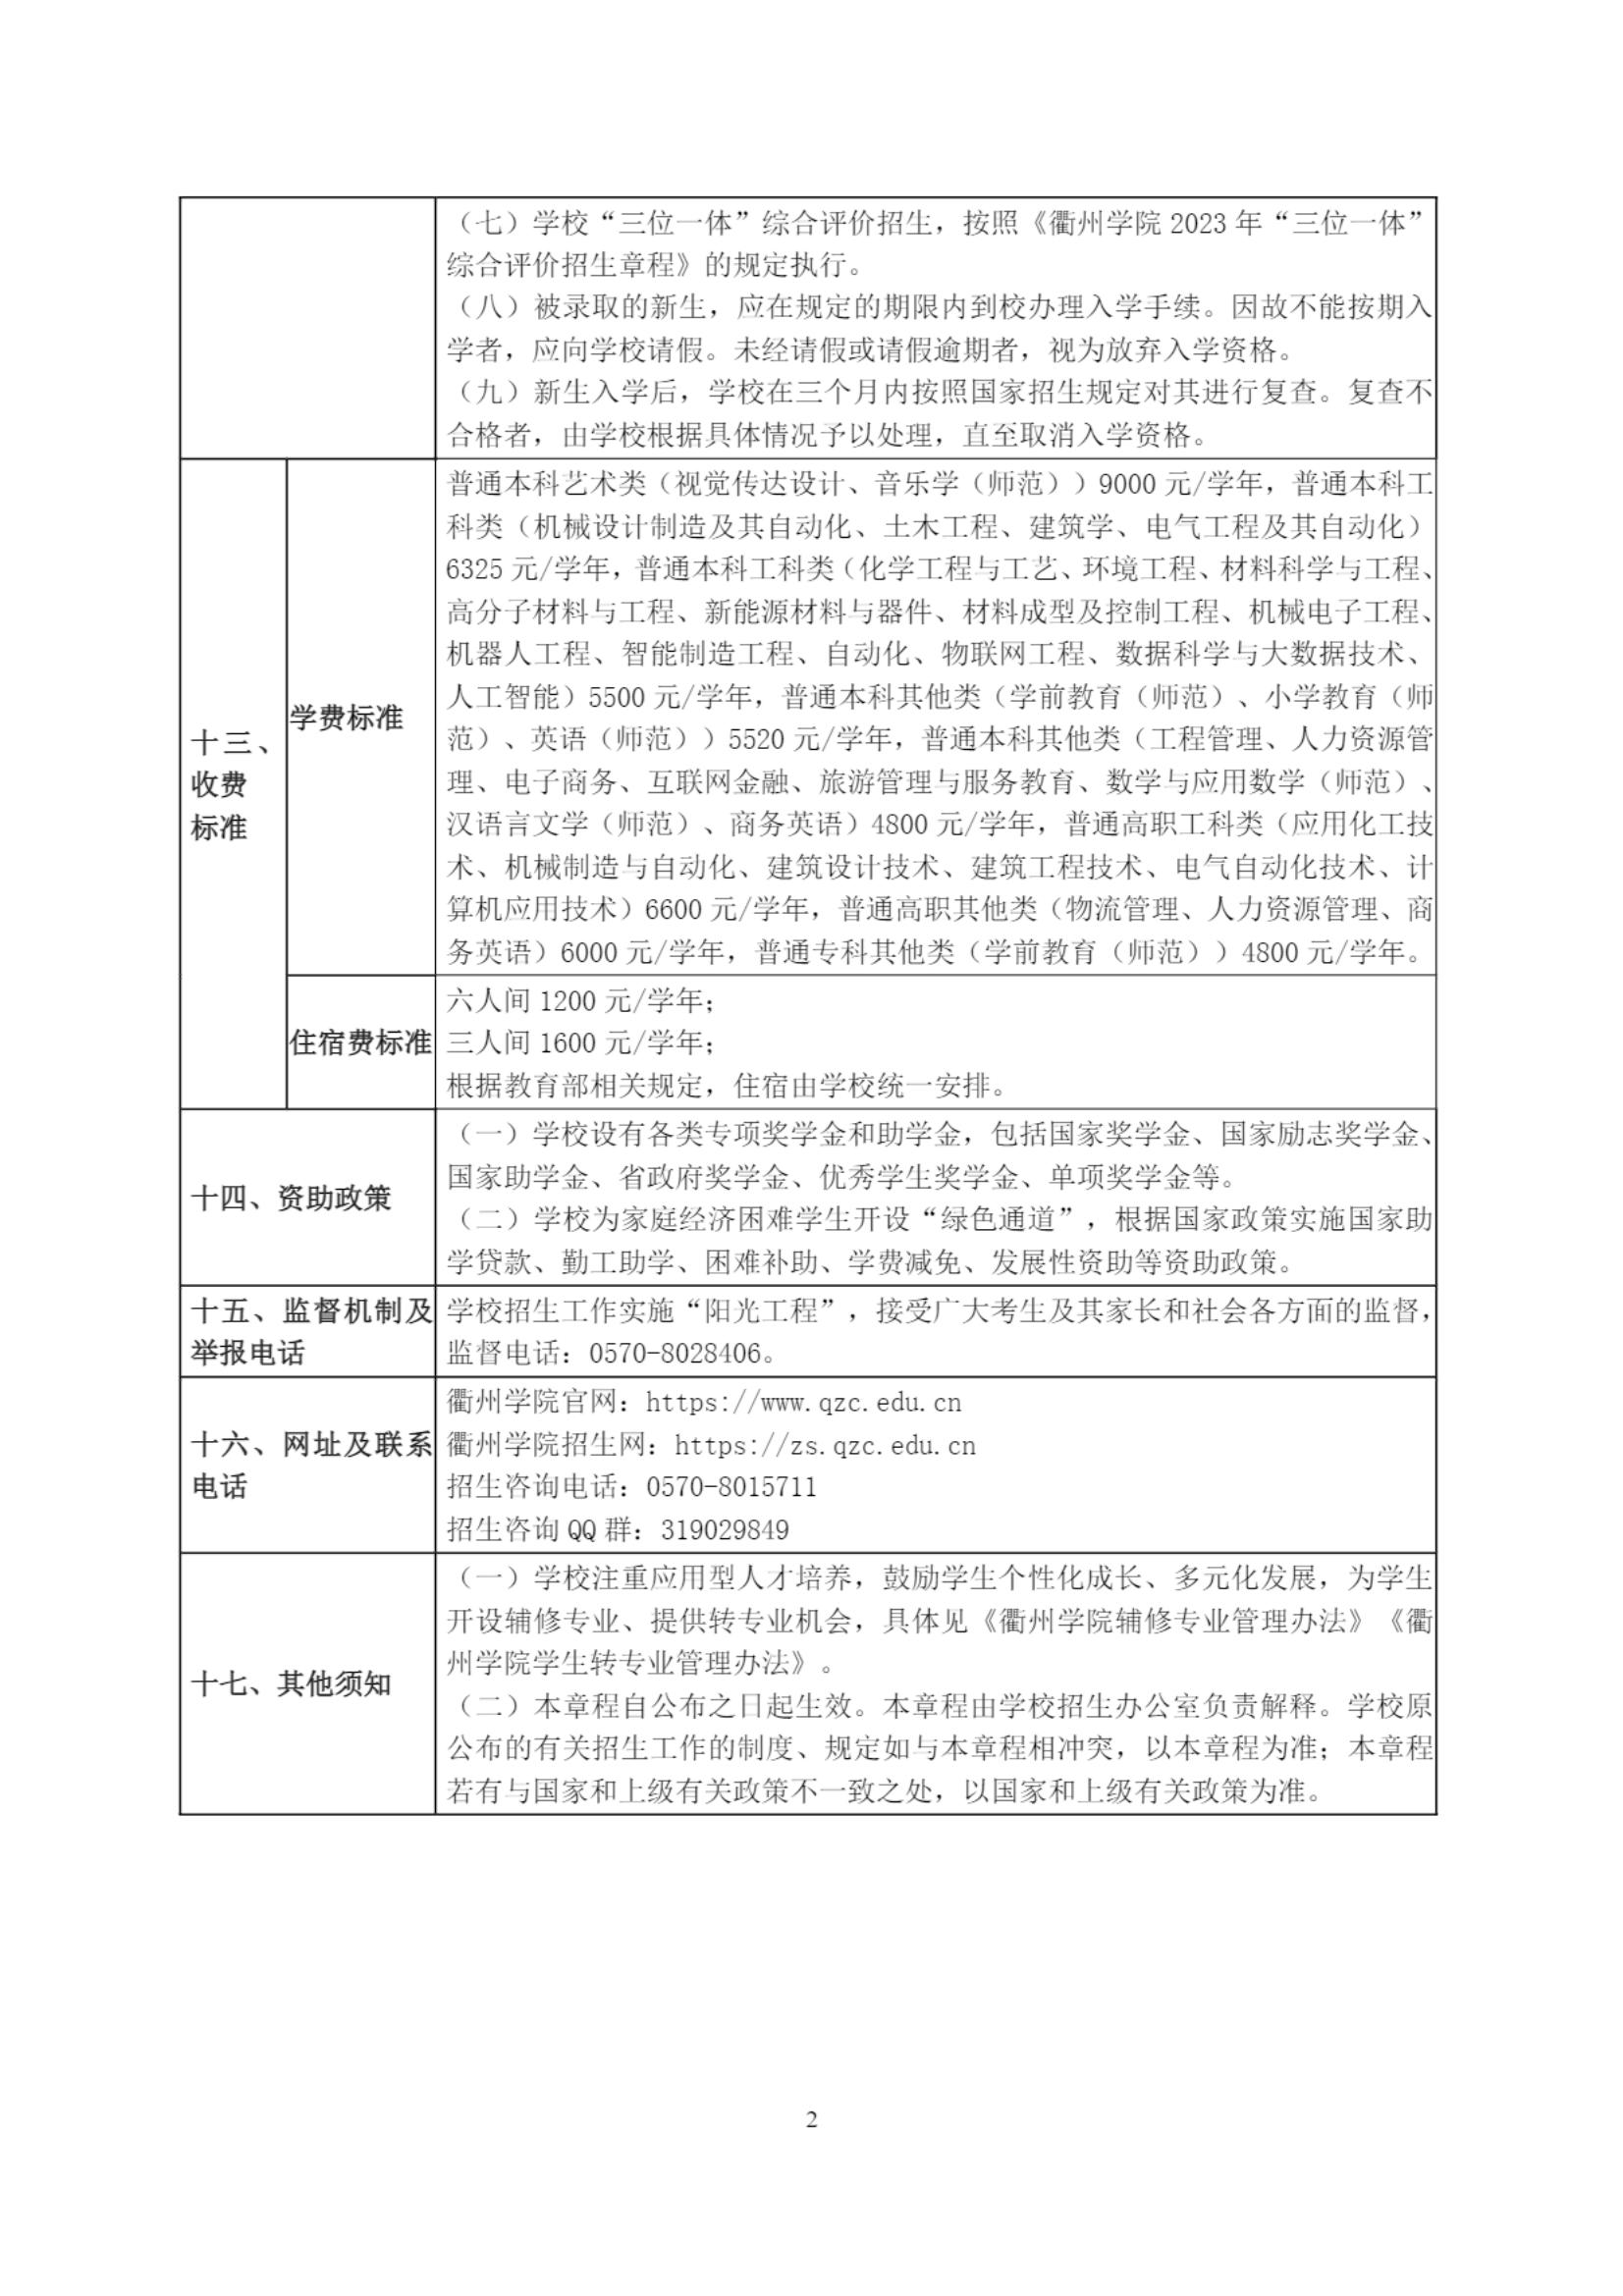 衢州学院2023年普通高校招生章程_01.jpg